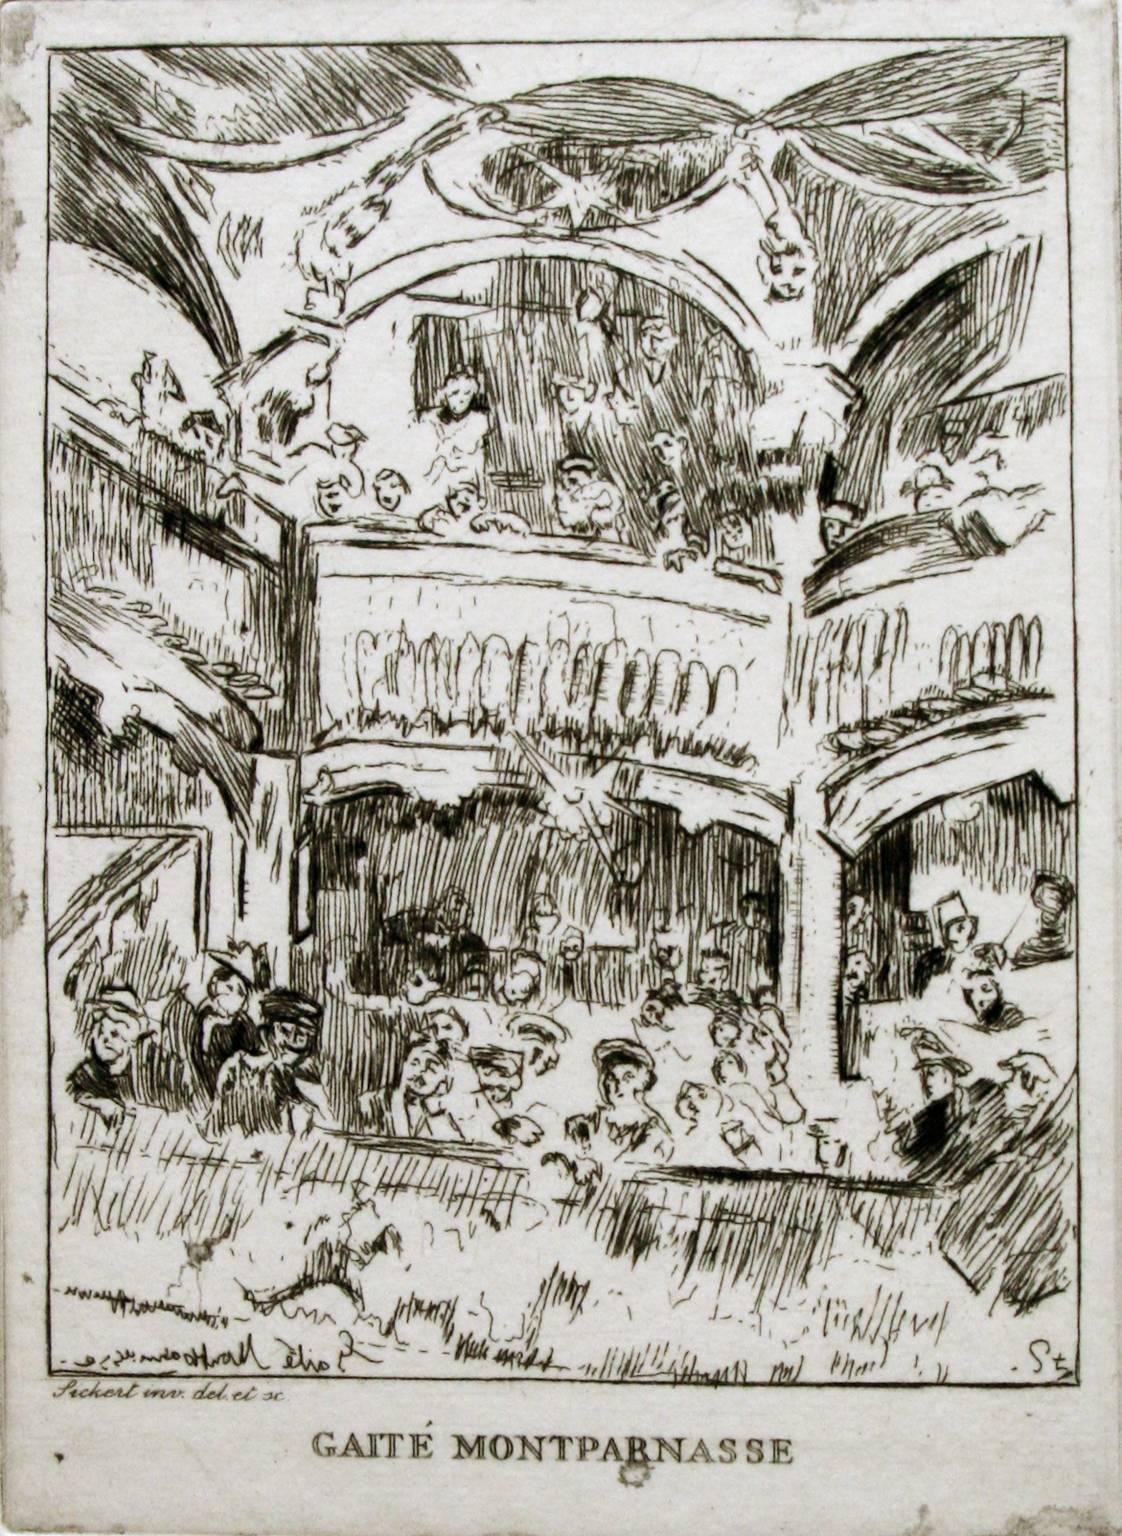 La Gaité Montparnasse. - Print by Walter Sickert